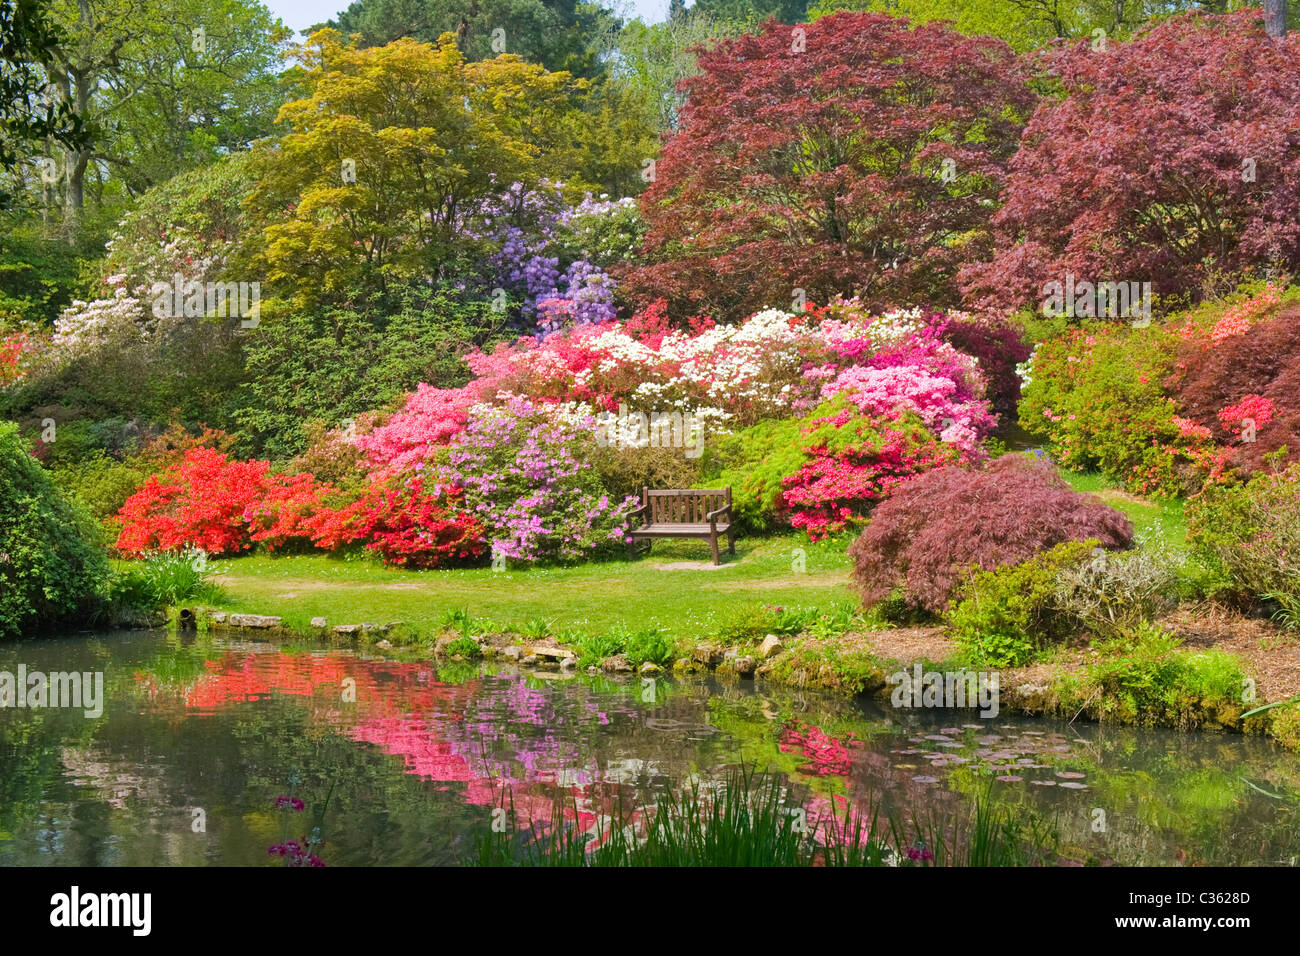 200 Hektar Exbury Gardens, Lionel de Rothschild Rhododendren & Azaleen zu reservieren, ab 1919, Azalee Bowl in voller Blüte Teich Stockfoto